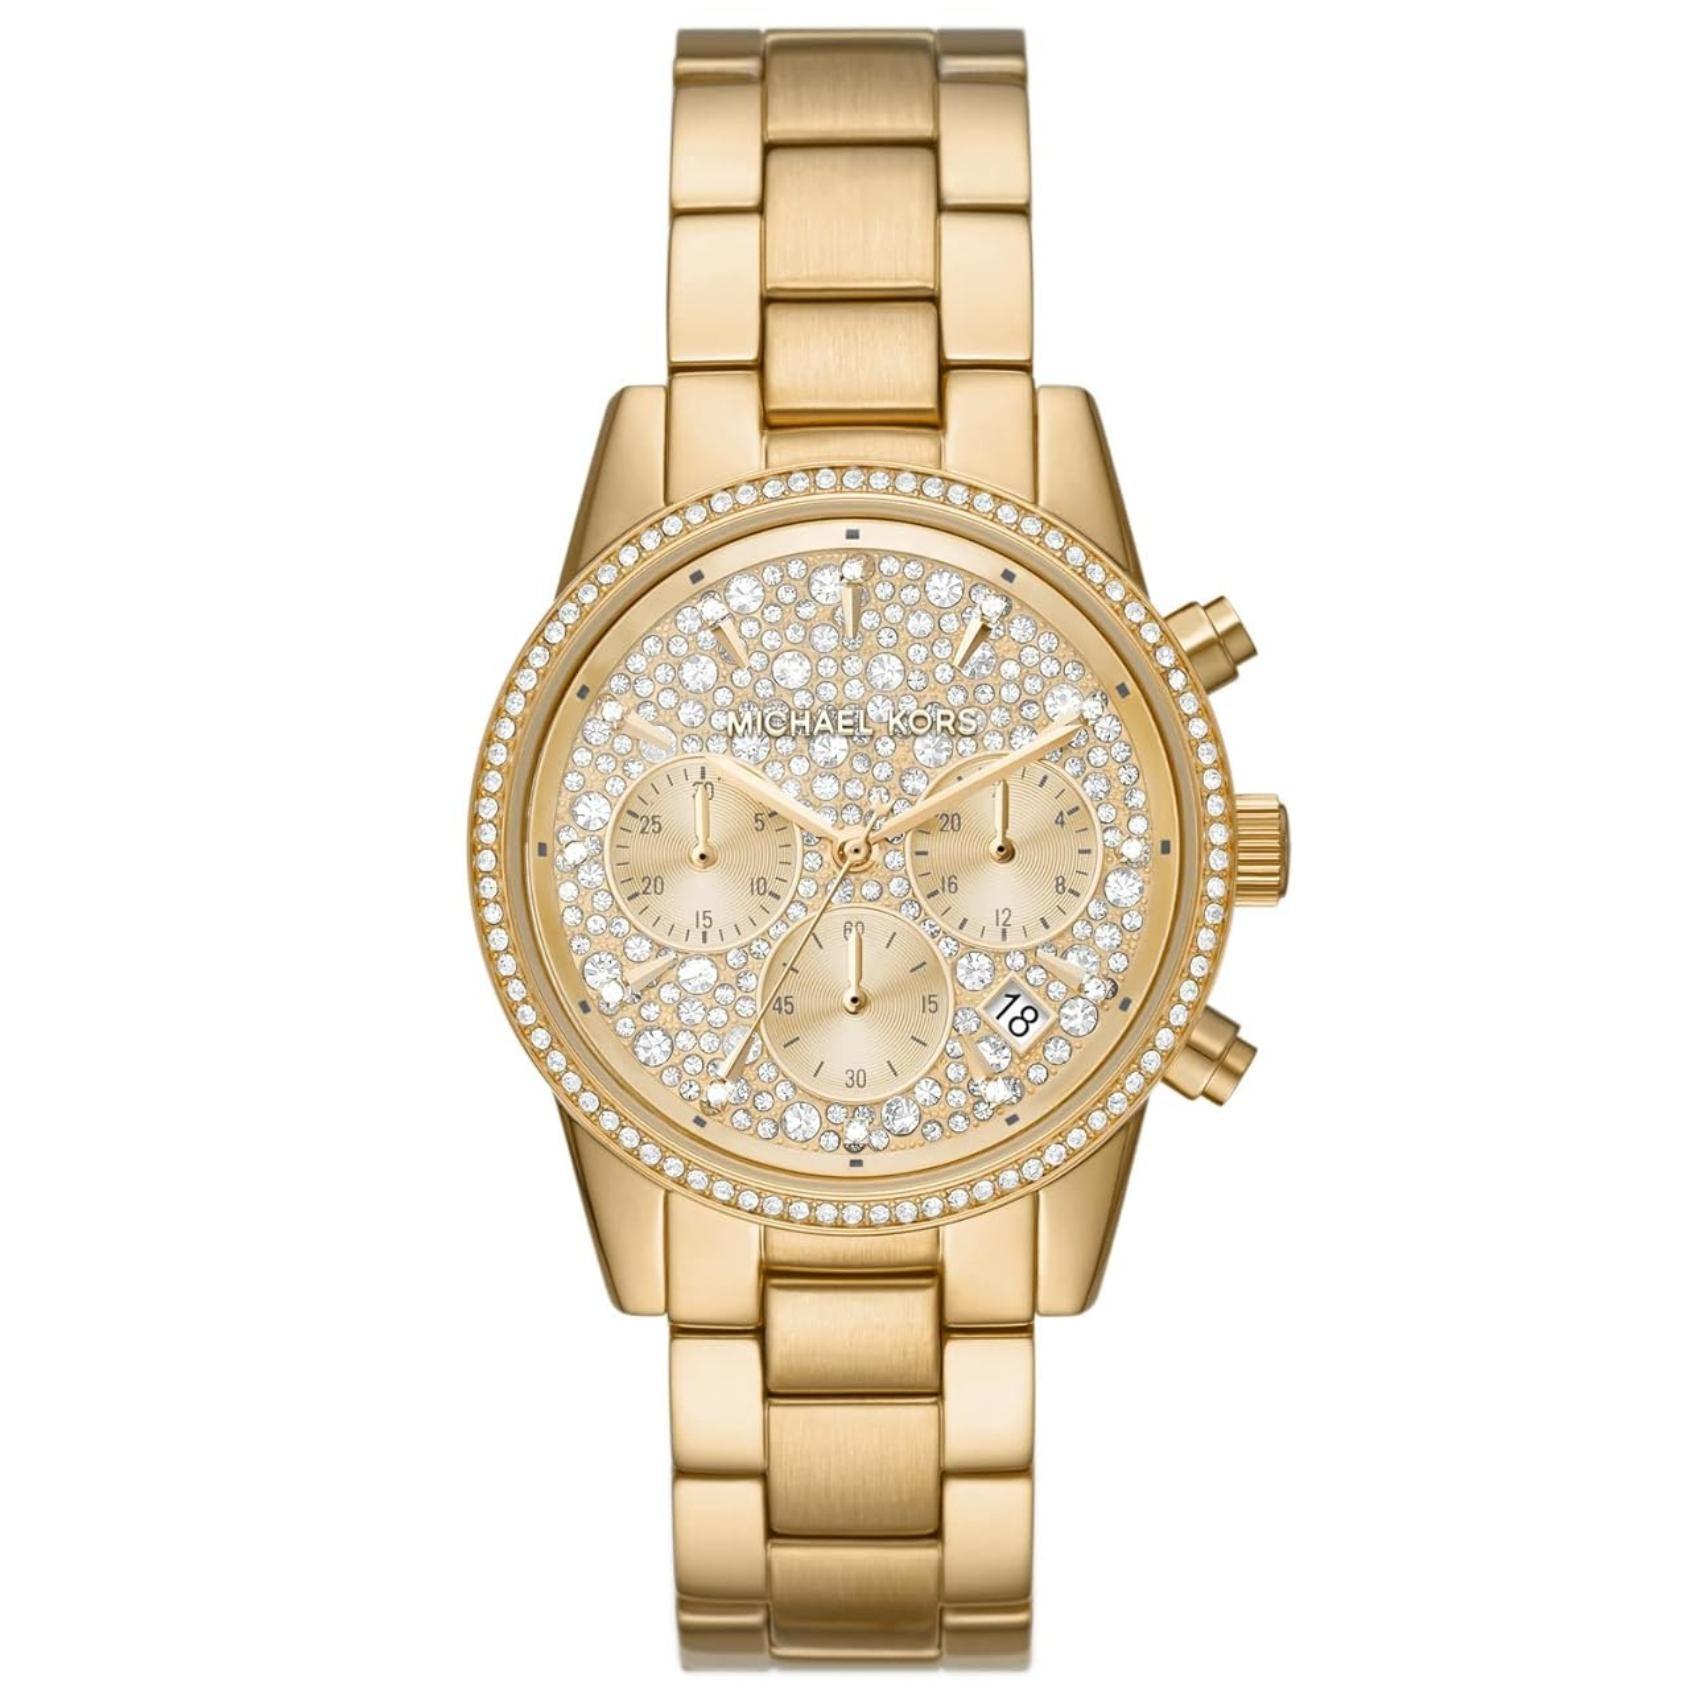 Γυναικείο ρολόι Michael Kors Ritz MK7310 χρονογράφος με ατσάλινο μπρασελέ σε χρυσό χρώμα χρυσό καντράν με ημερομηνία και στεφάνι 37mm με ζιργκόν.